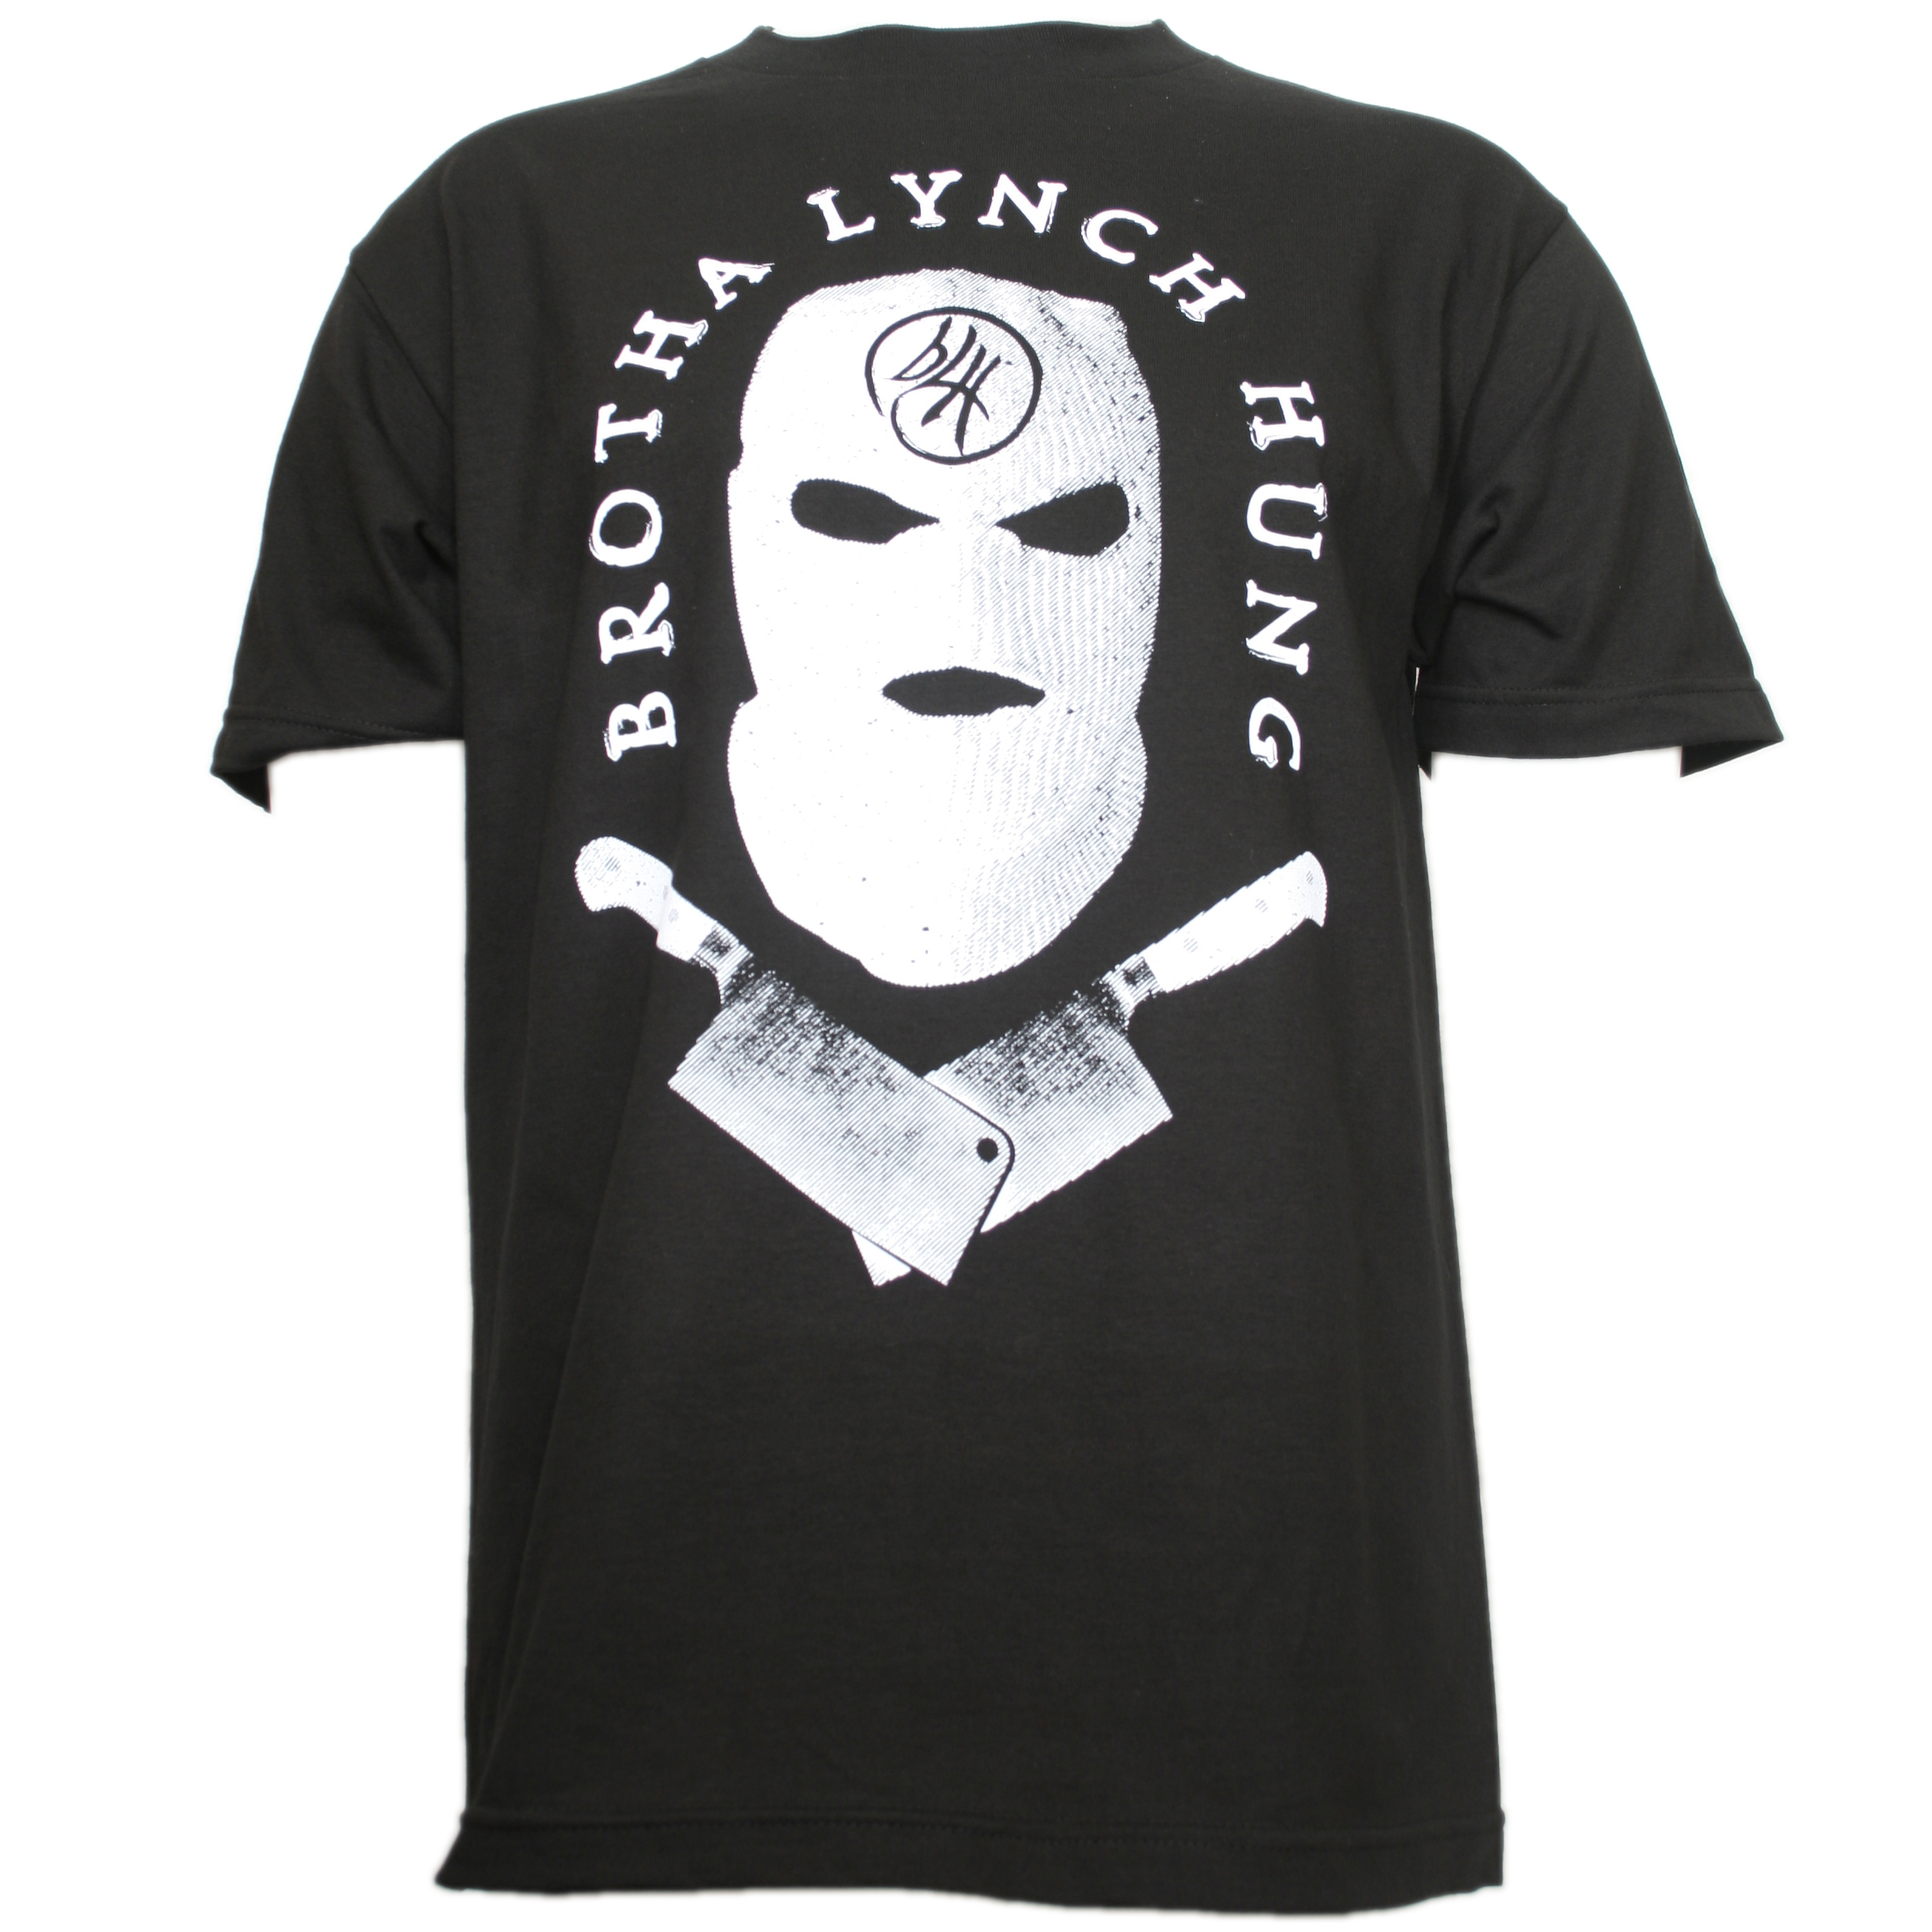 Brotha Lynch Hung - Black Mask T-Shirt